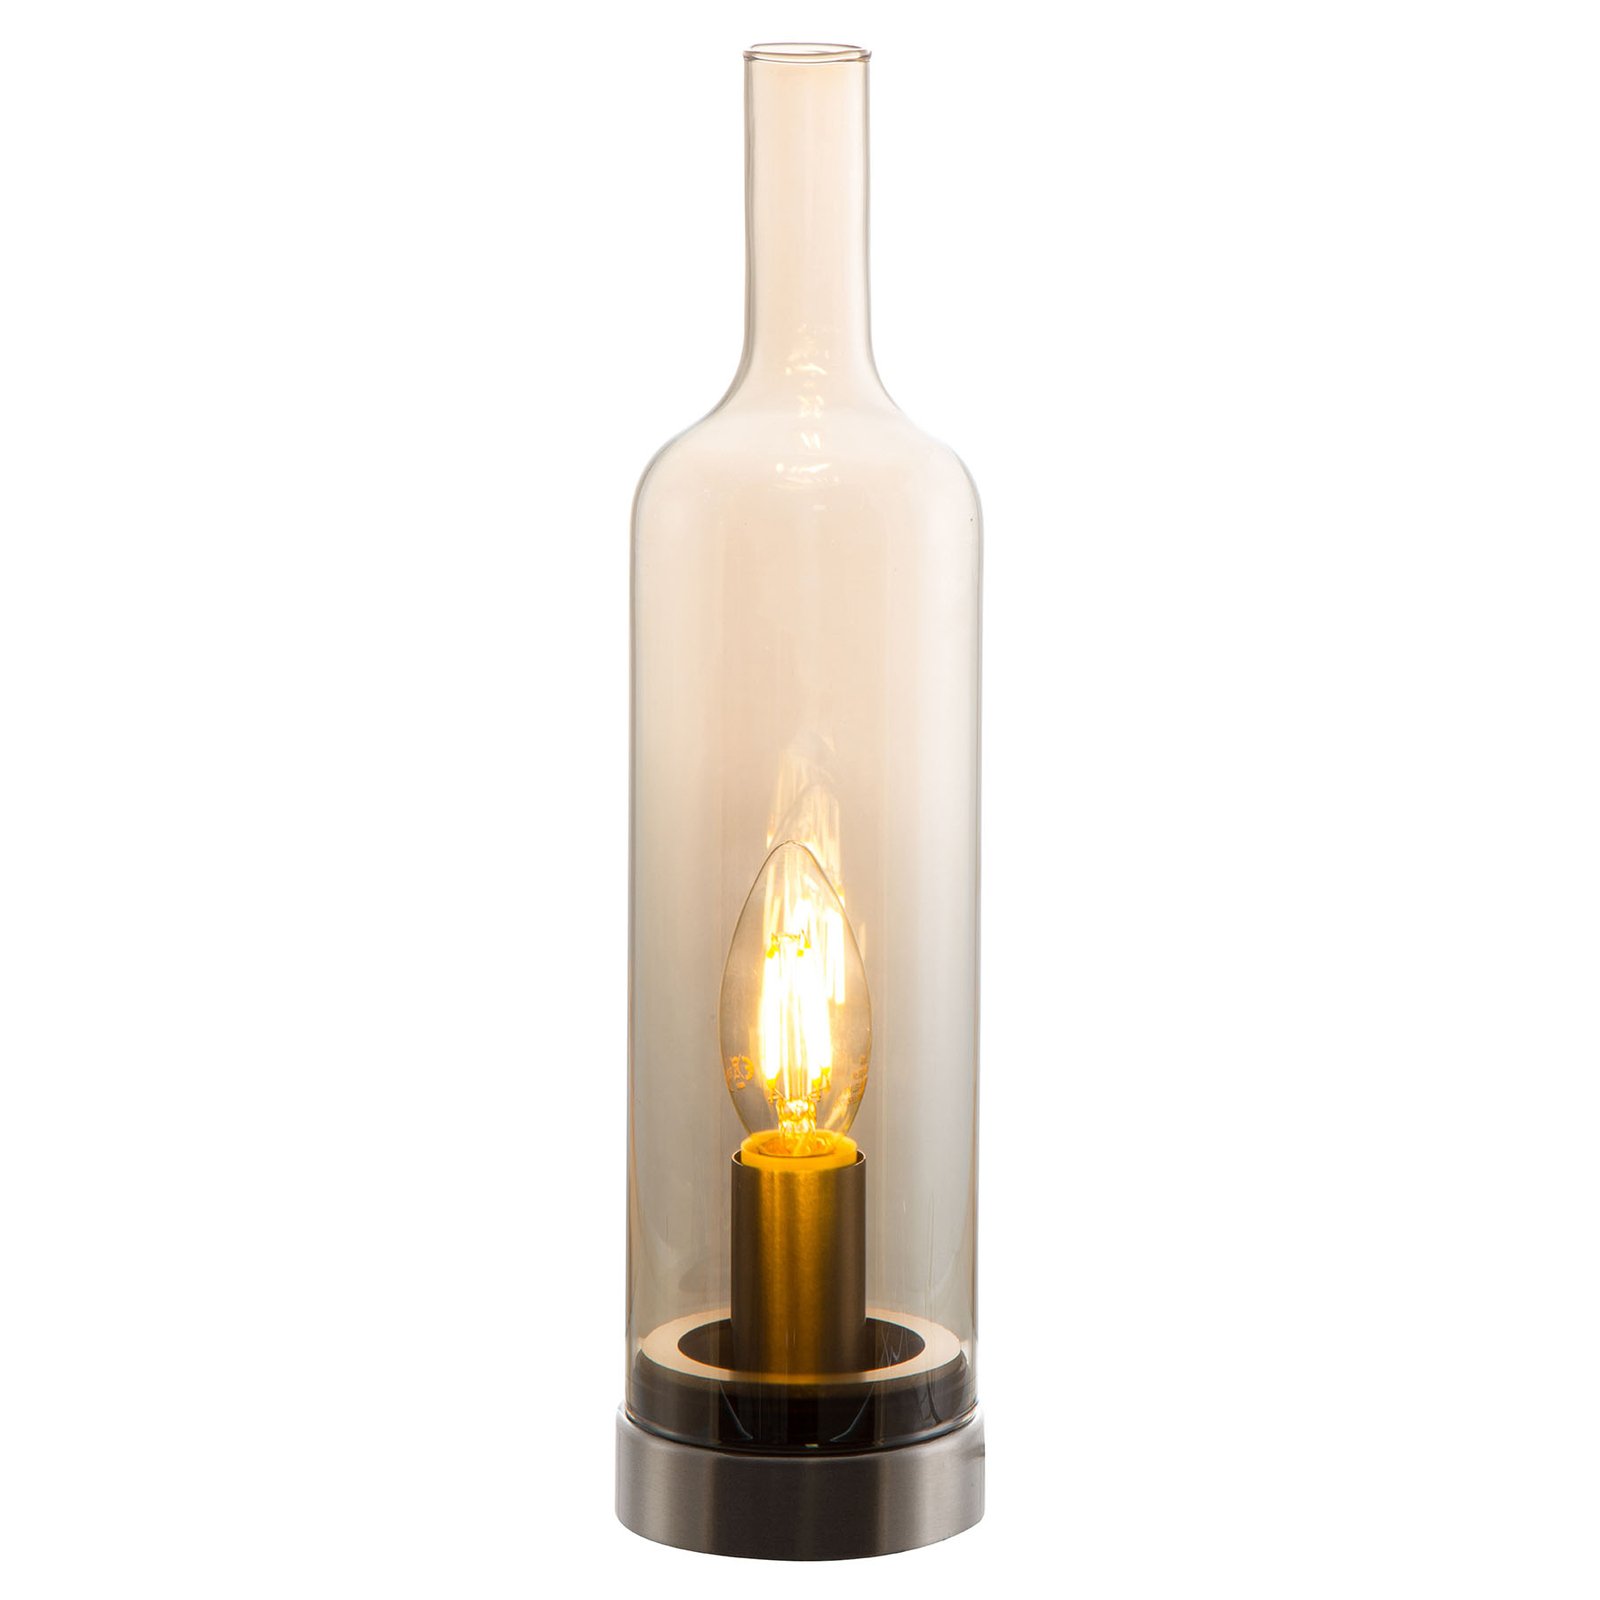 Palackozott üveg asztali lámpa, borostyán